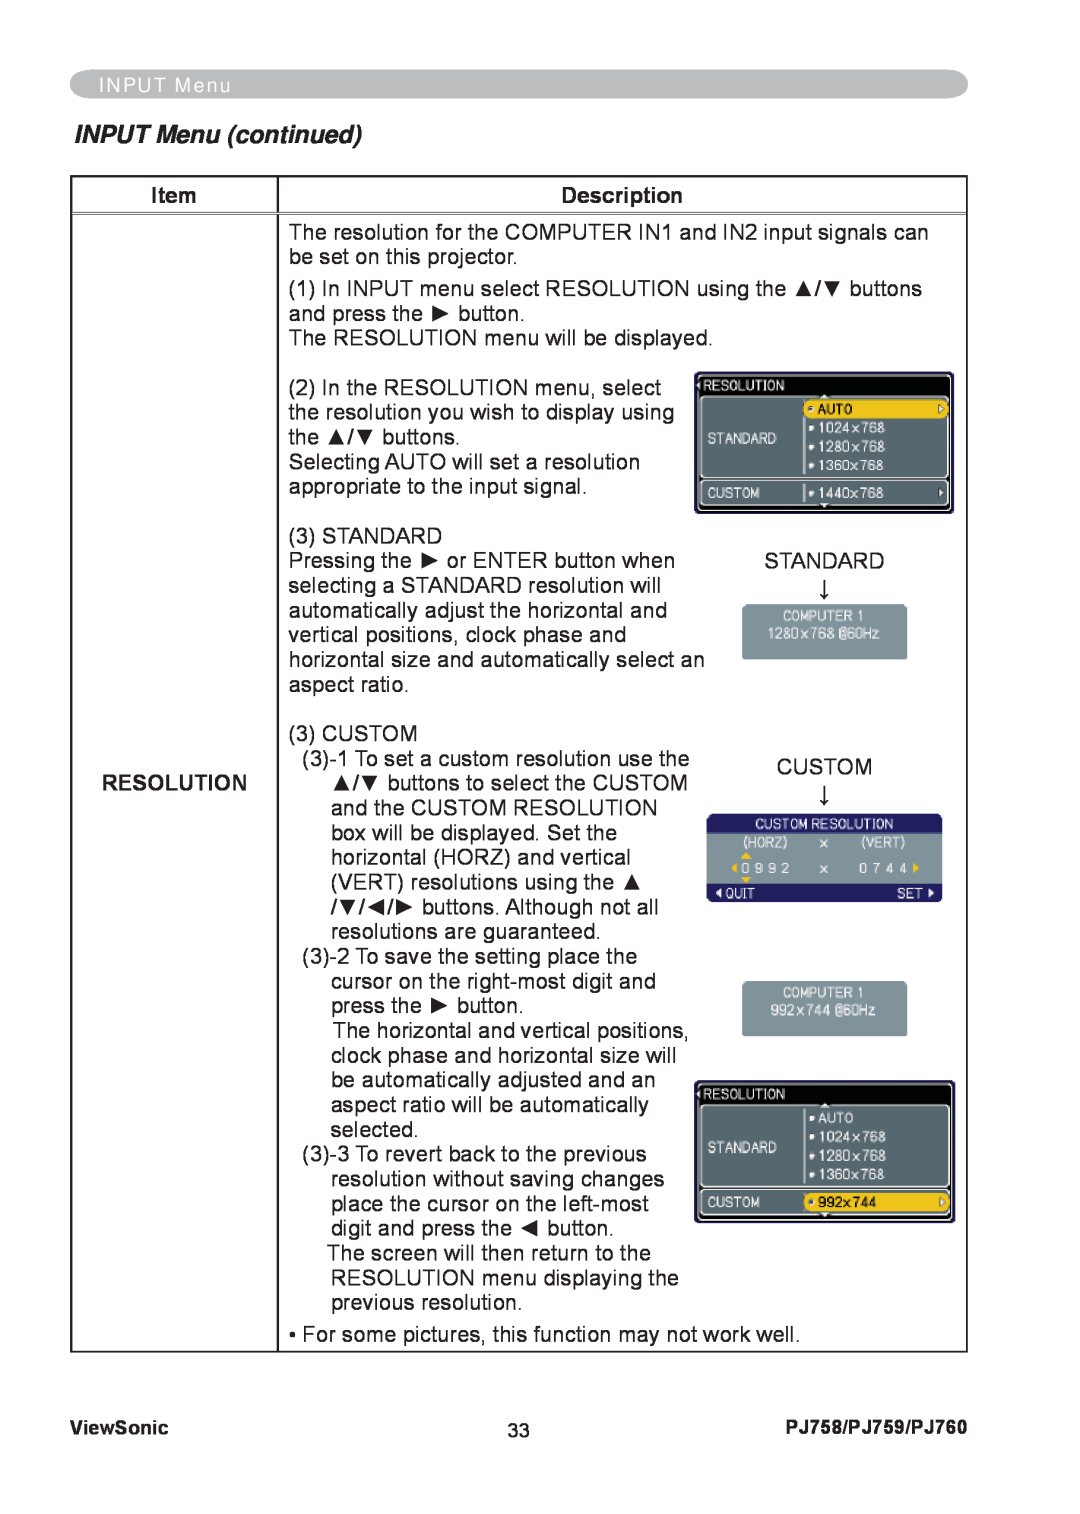 ViewSonic PJ758/PJ759/PJ760 manual INPUT Menu continued, Item, Description, Resolution 